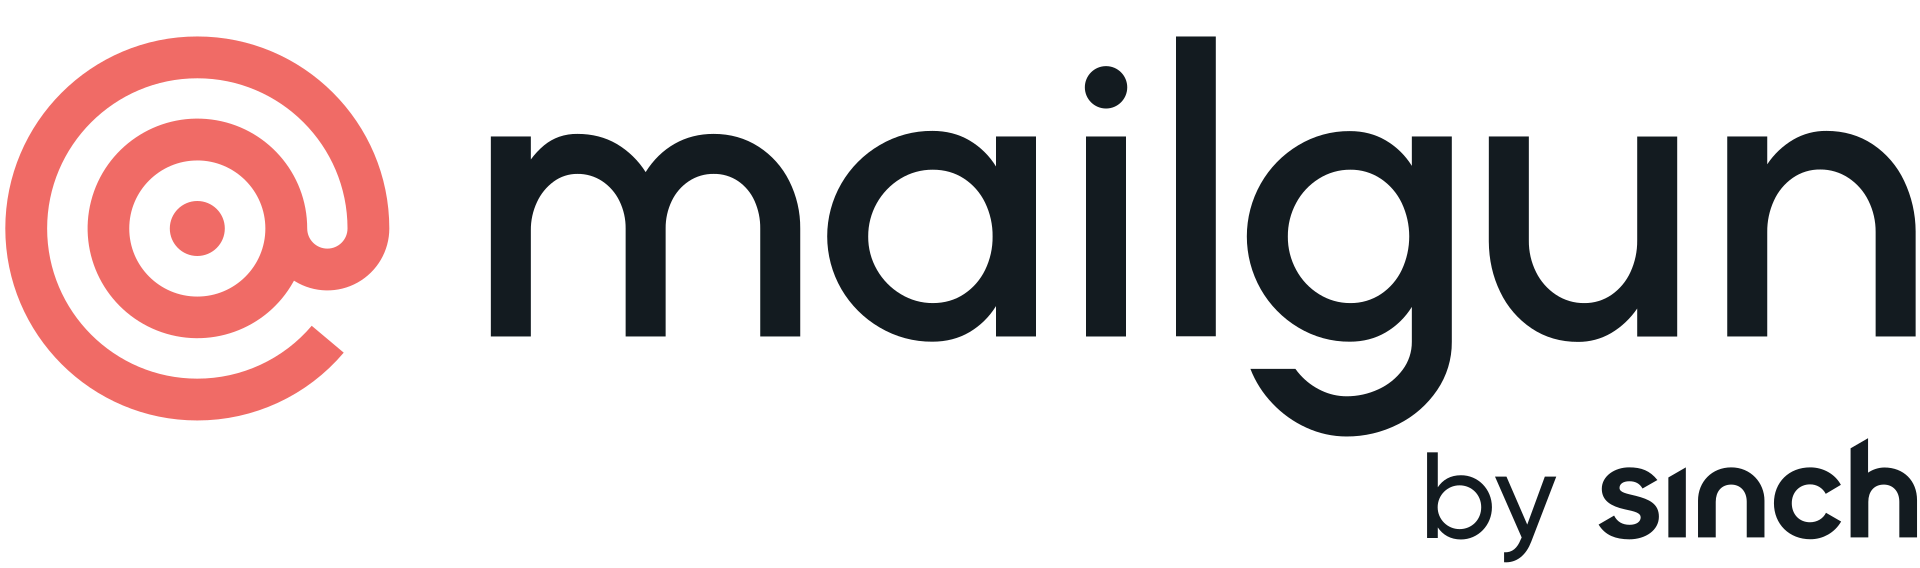 mailgun logo transparent